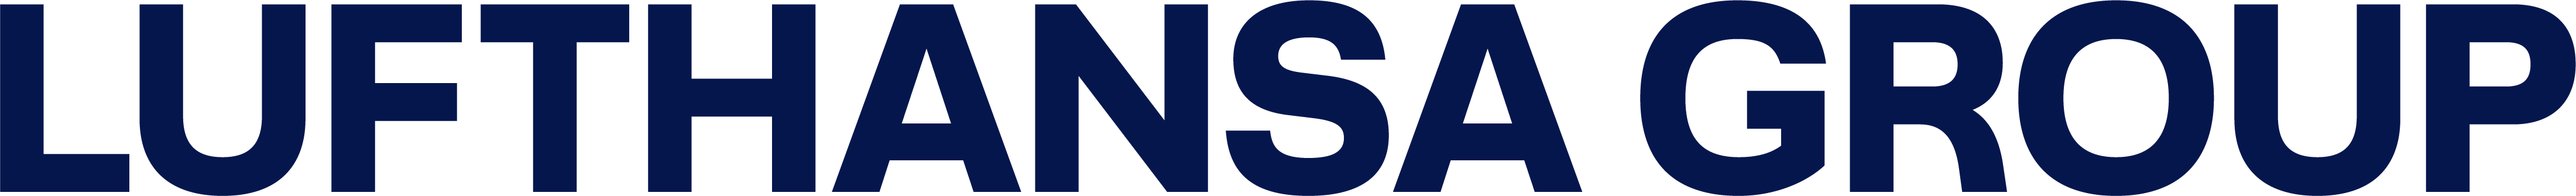 Lufthansa group logo